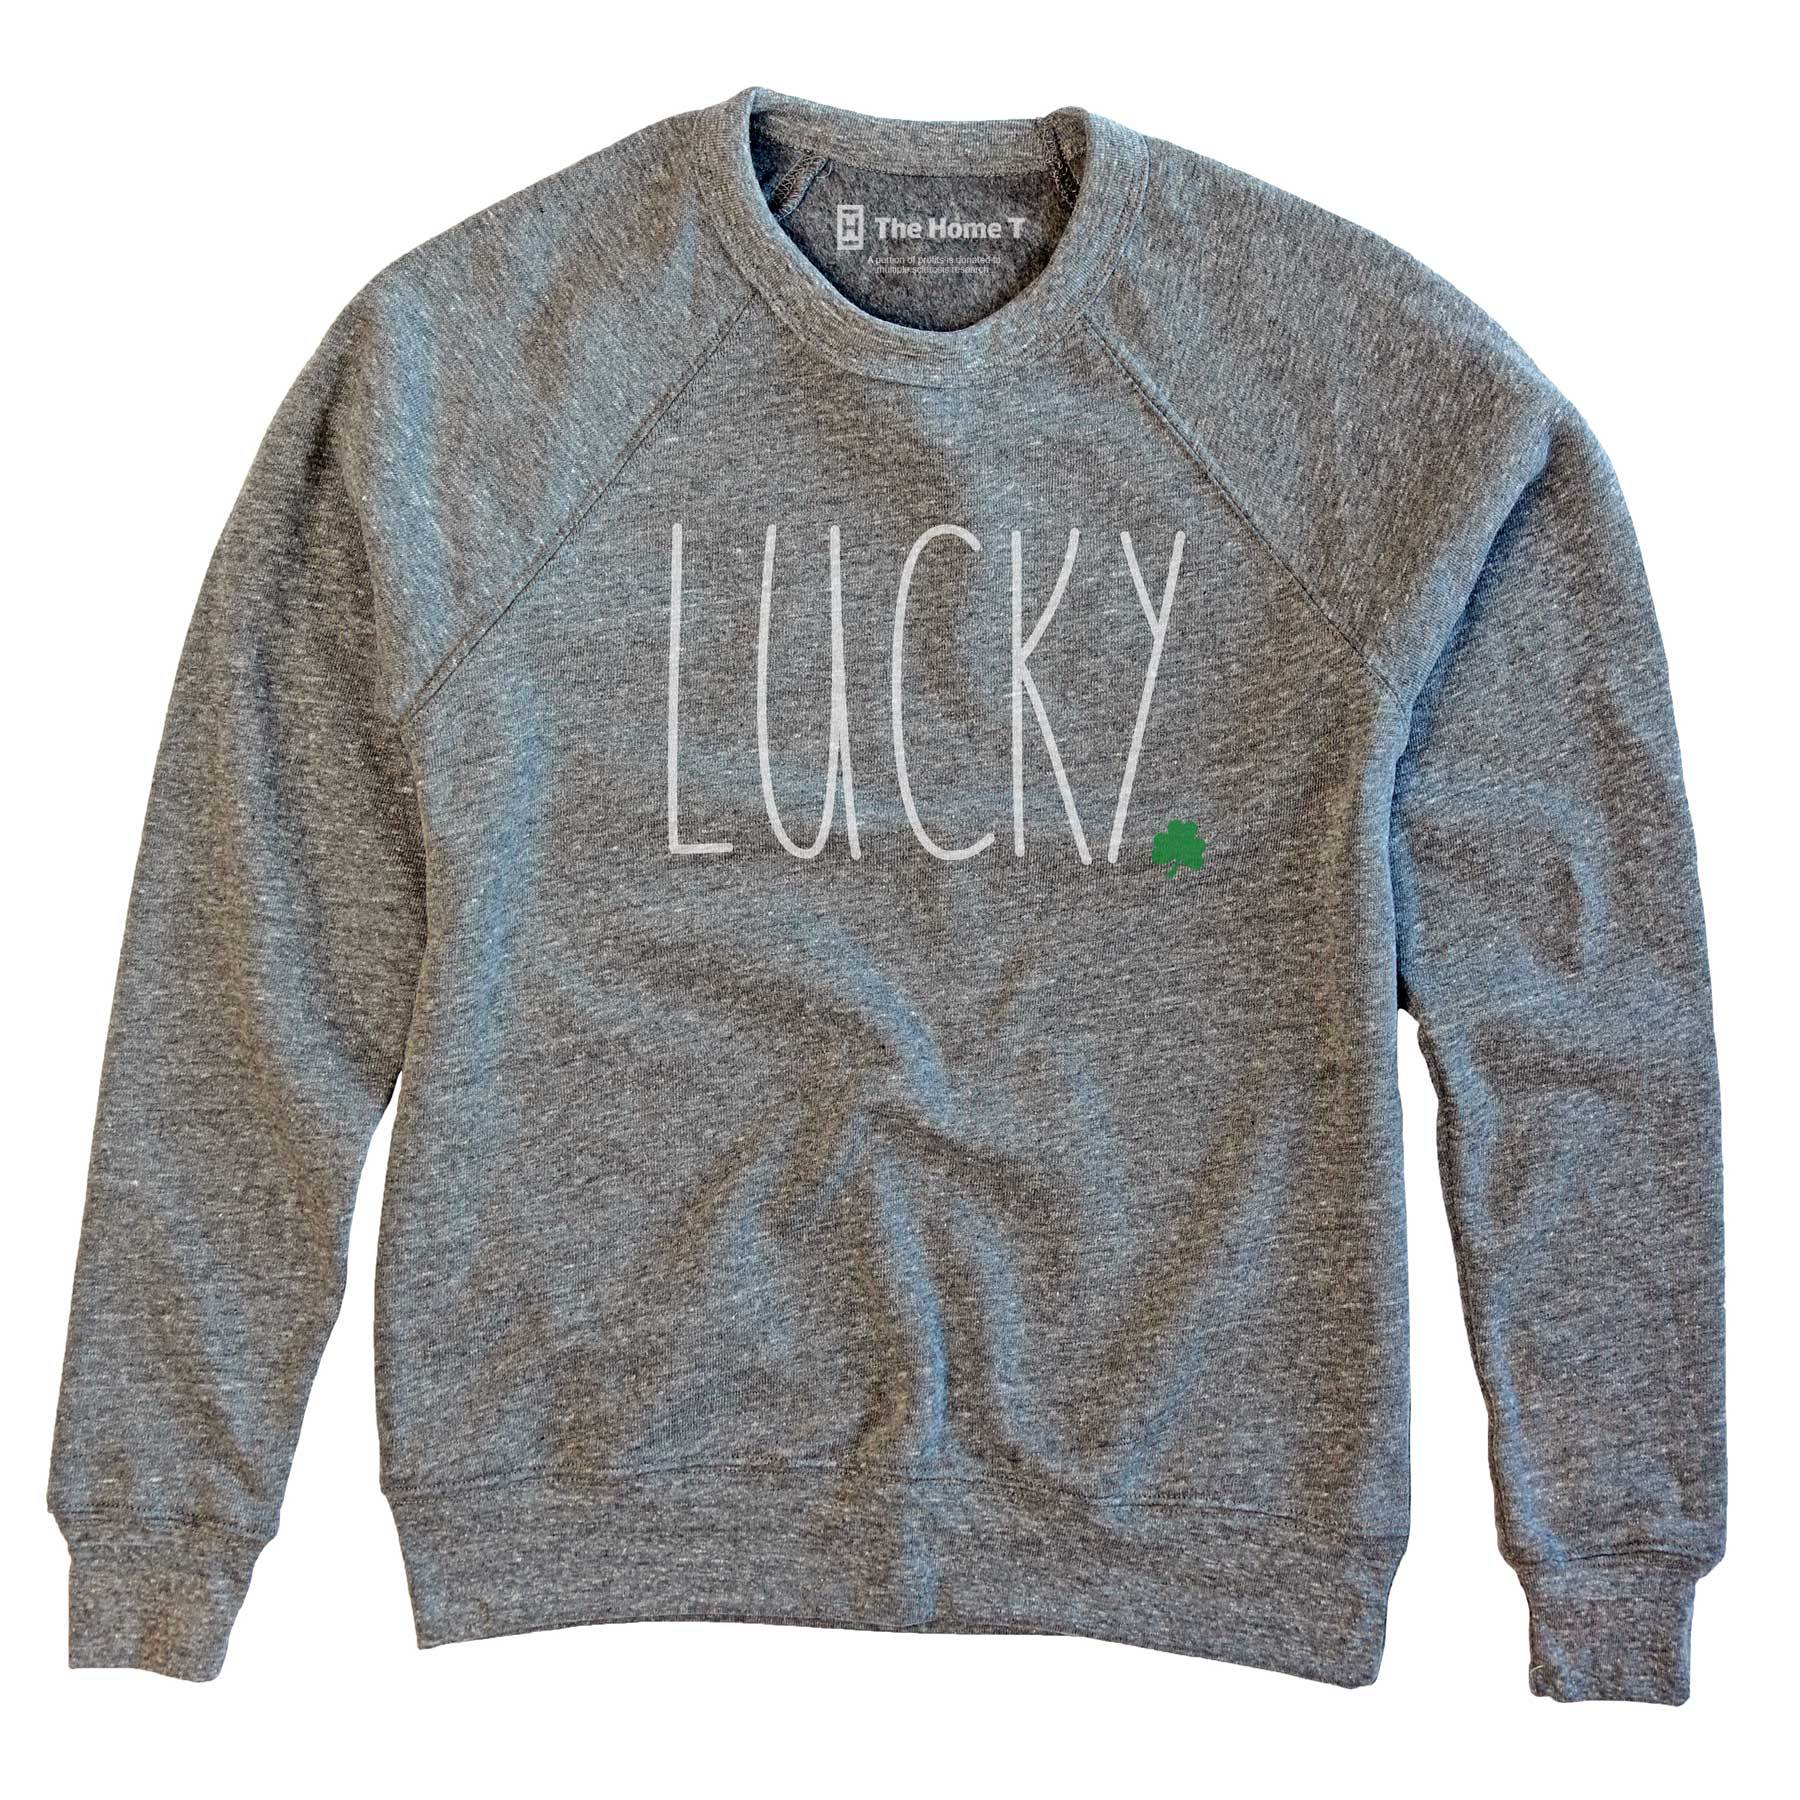 Lucky athletic grey sweatshirt